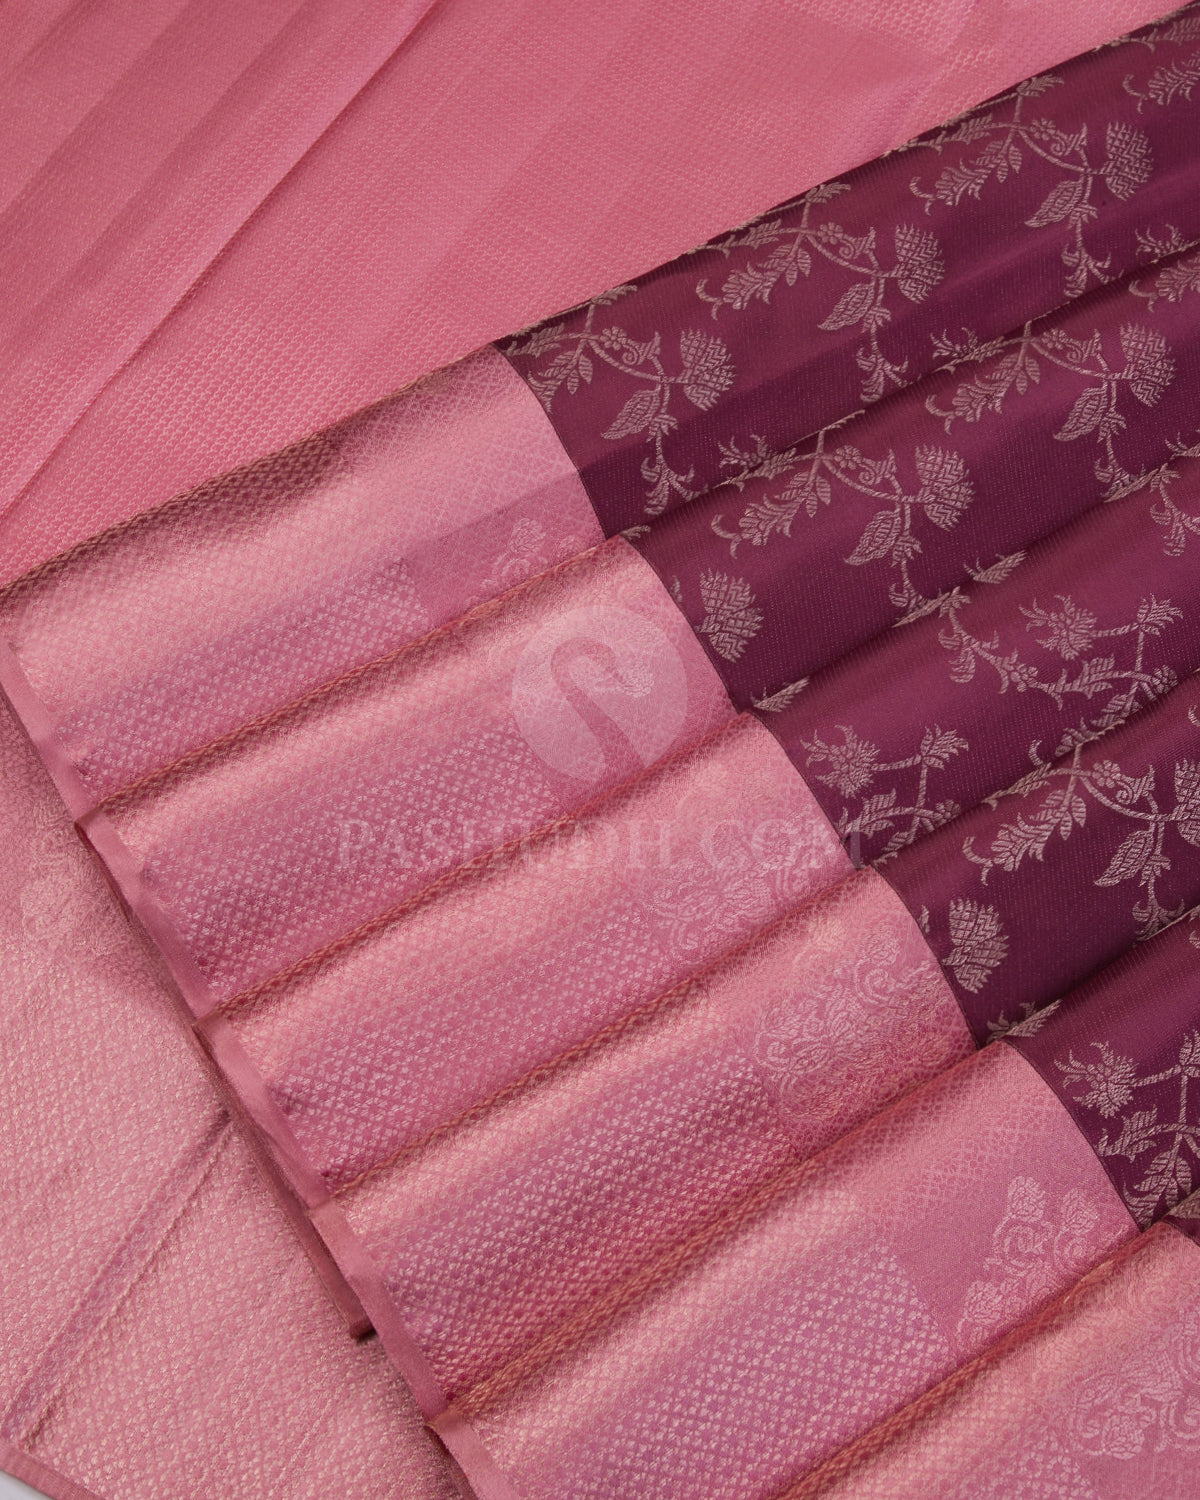 Plum and Baby Pink Kanjivaram Silk Saree - D505(A) - View 3